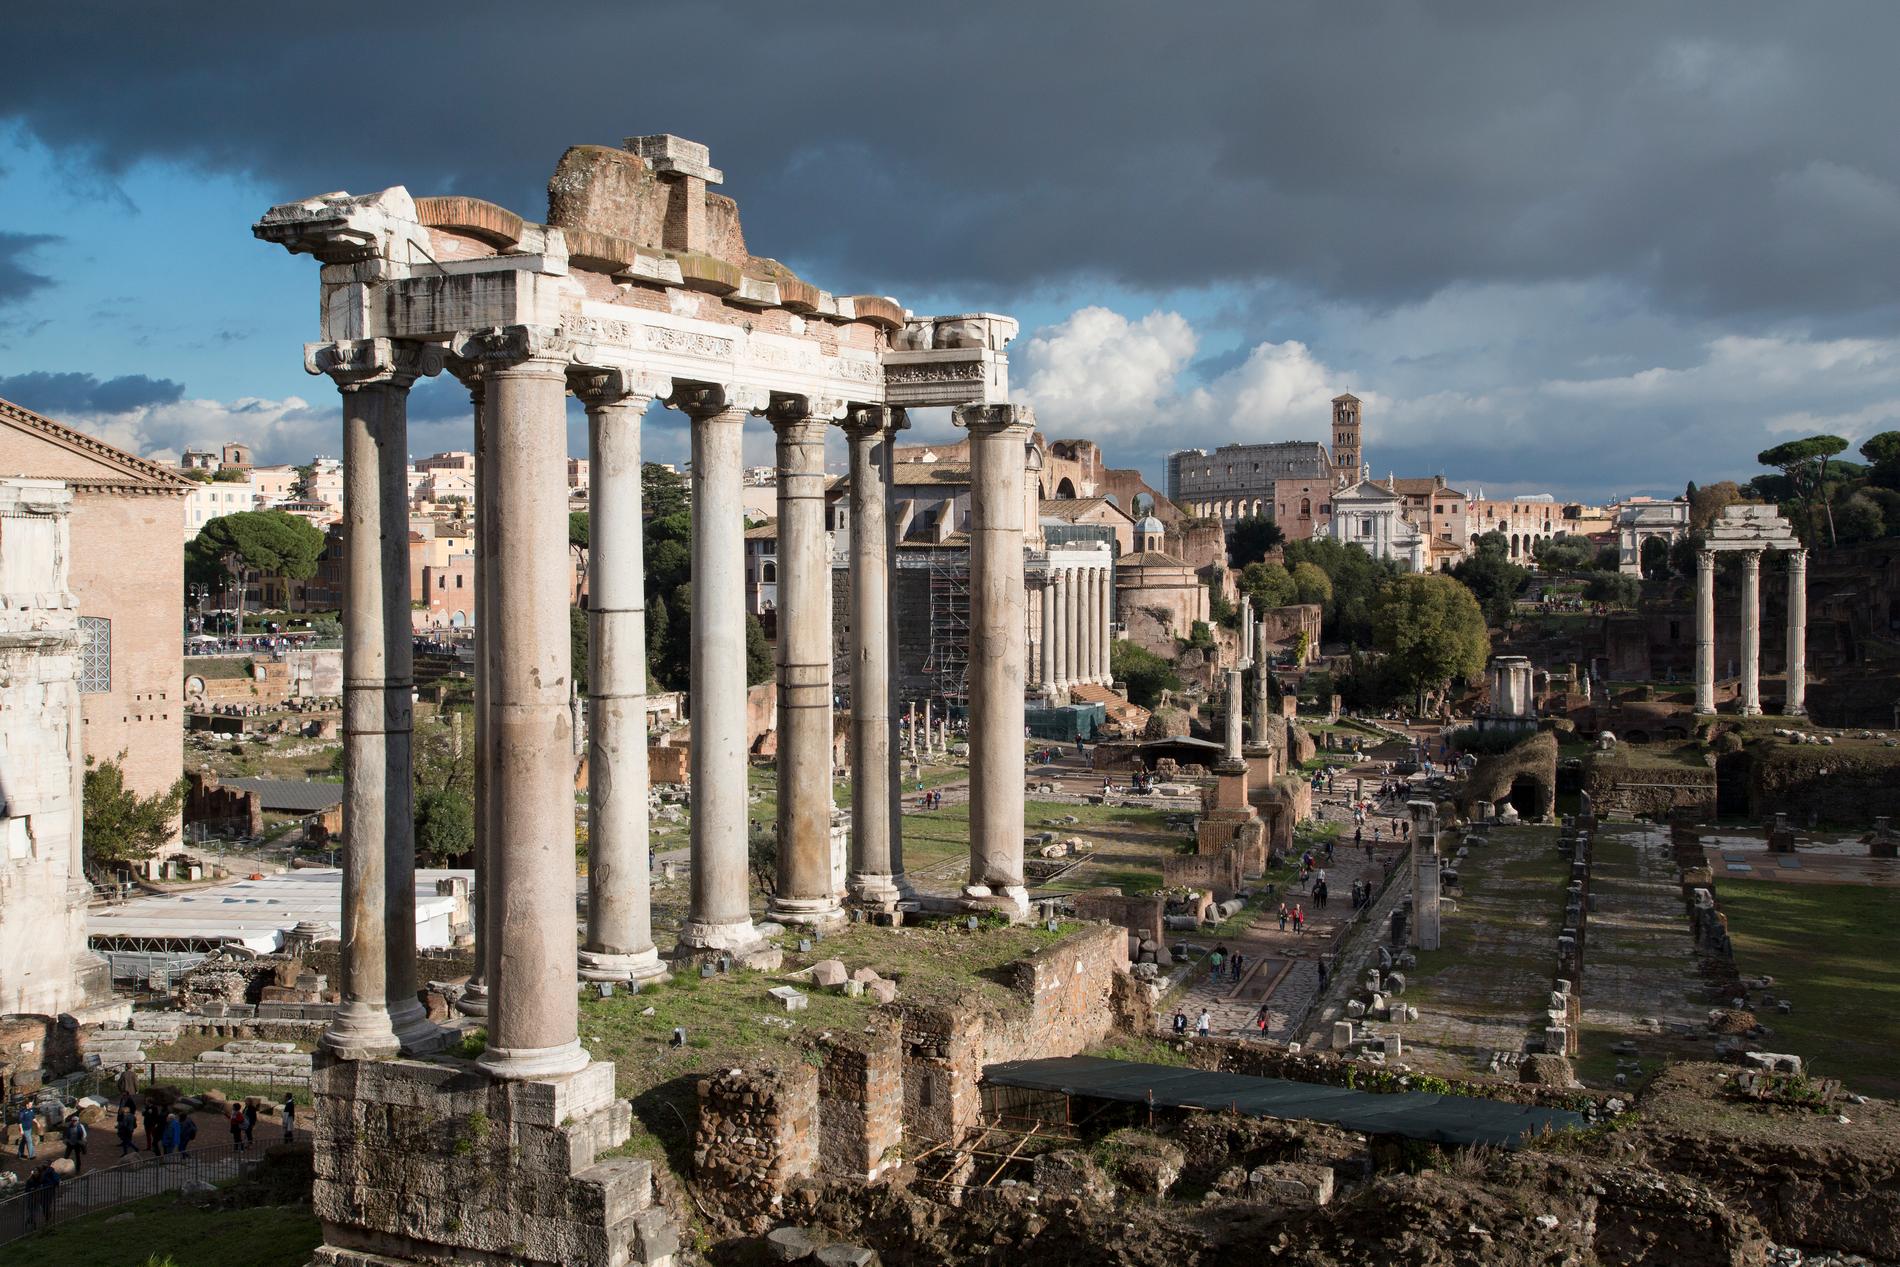 Forum Romanum var det antika Roms kommersiella, politiska och religiösa centrum. Men när ska eleverna lära sig mer om det? undrar många. Arkivbild.